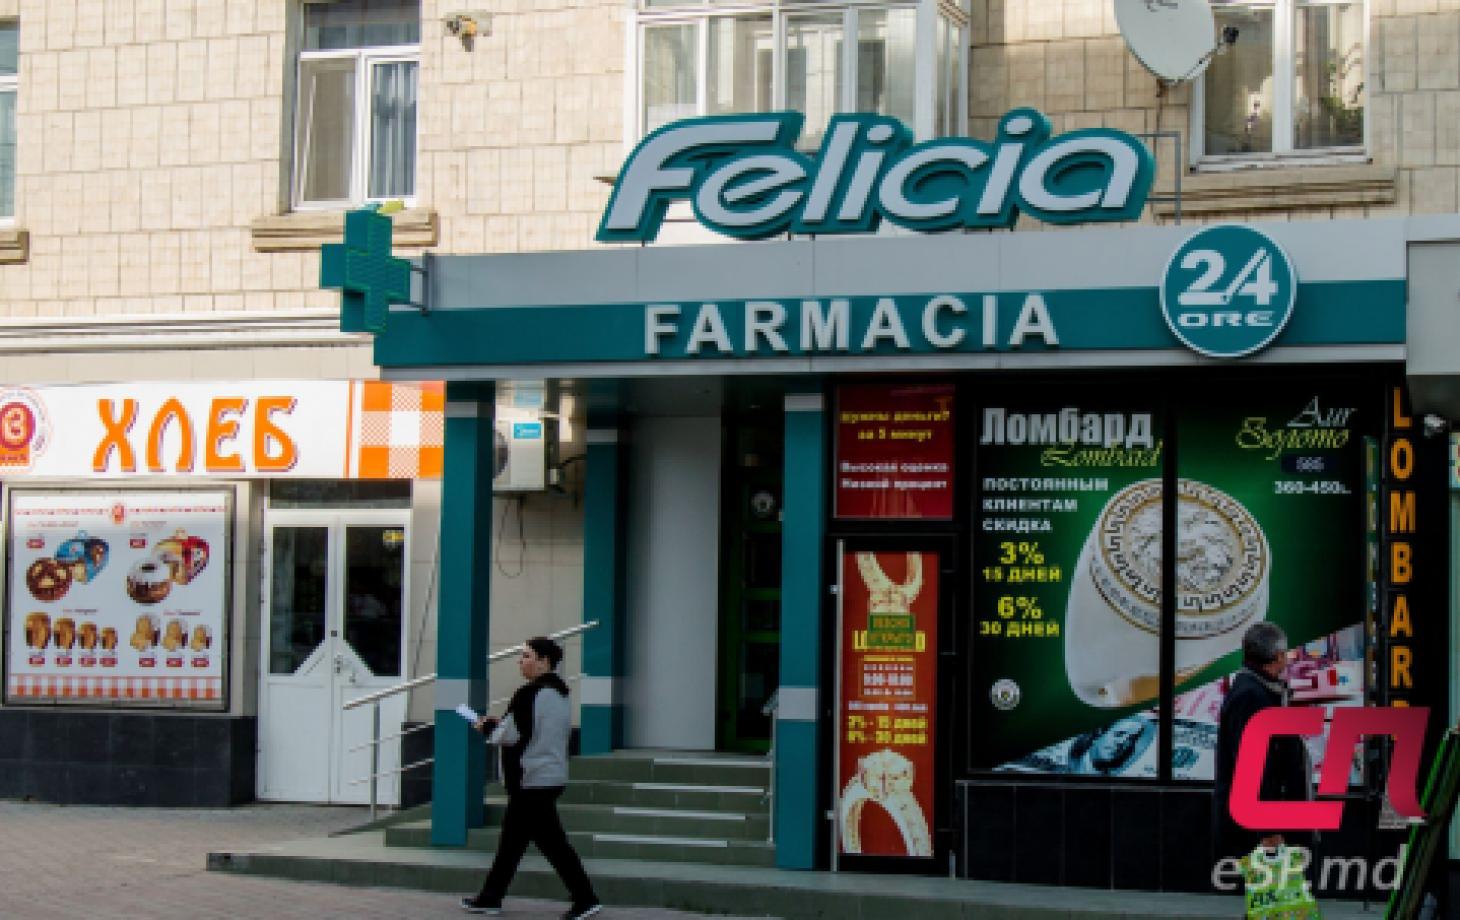 Аптека «Felicia»